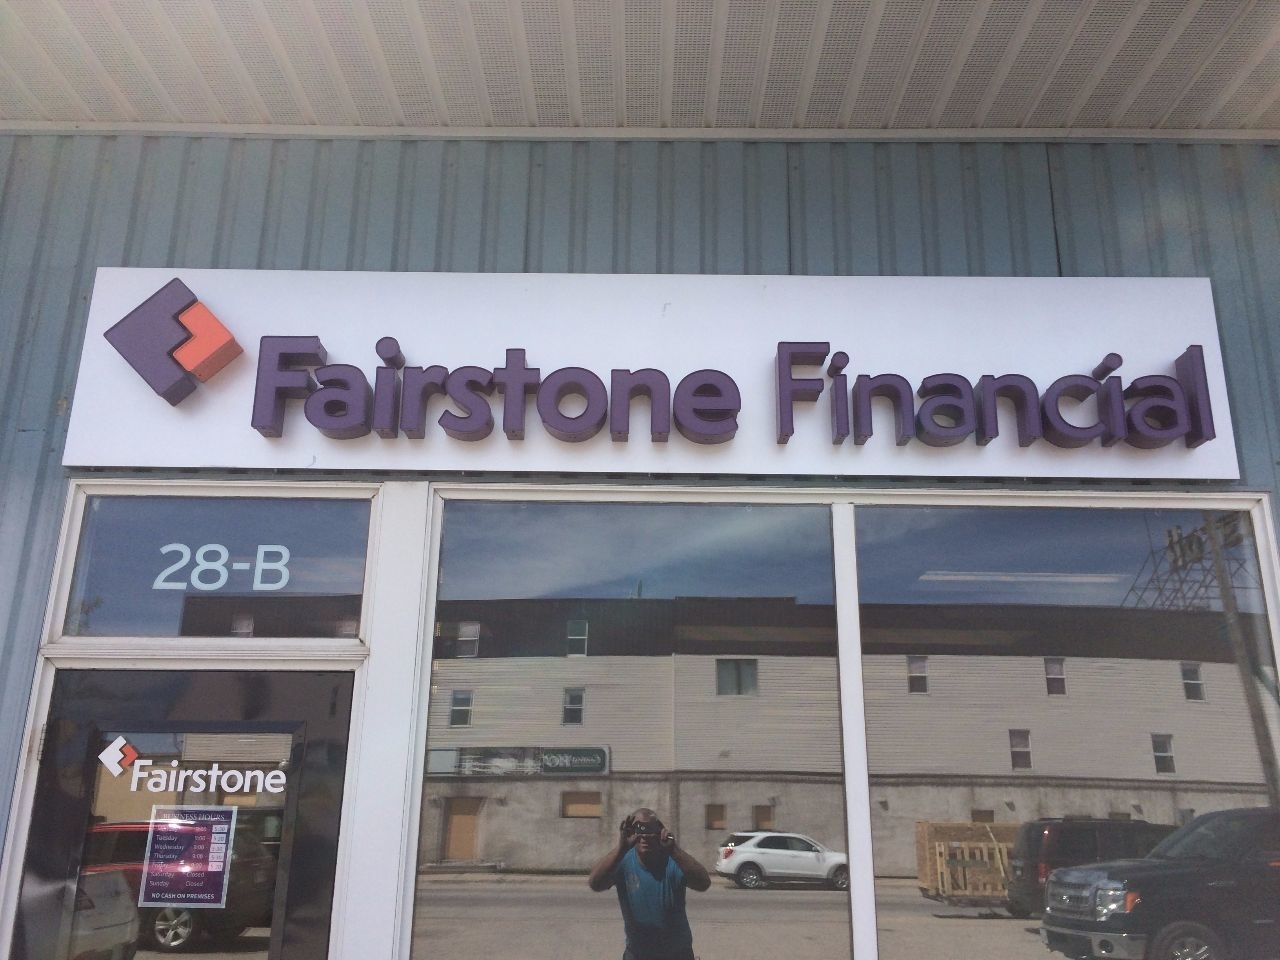 Fairstone - Loans